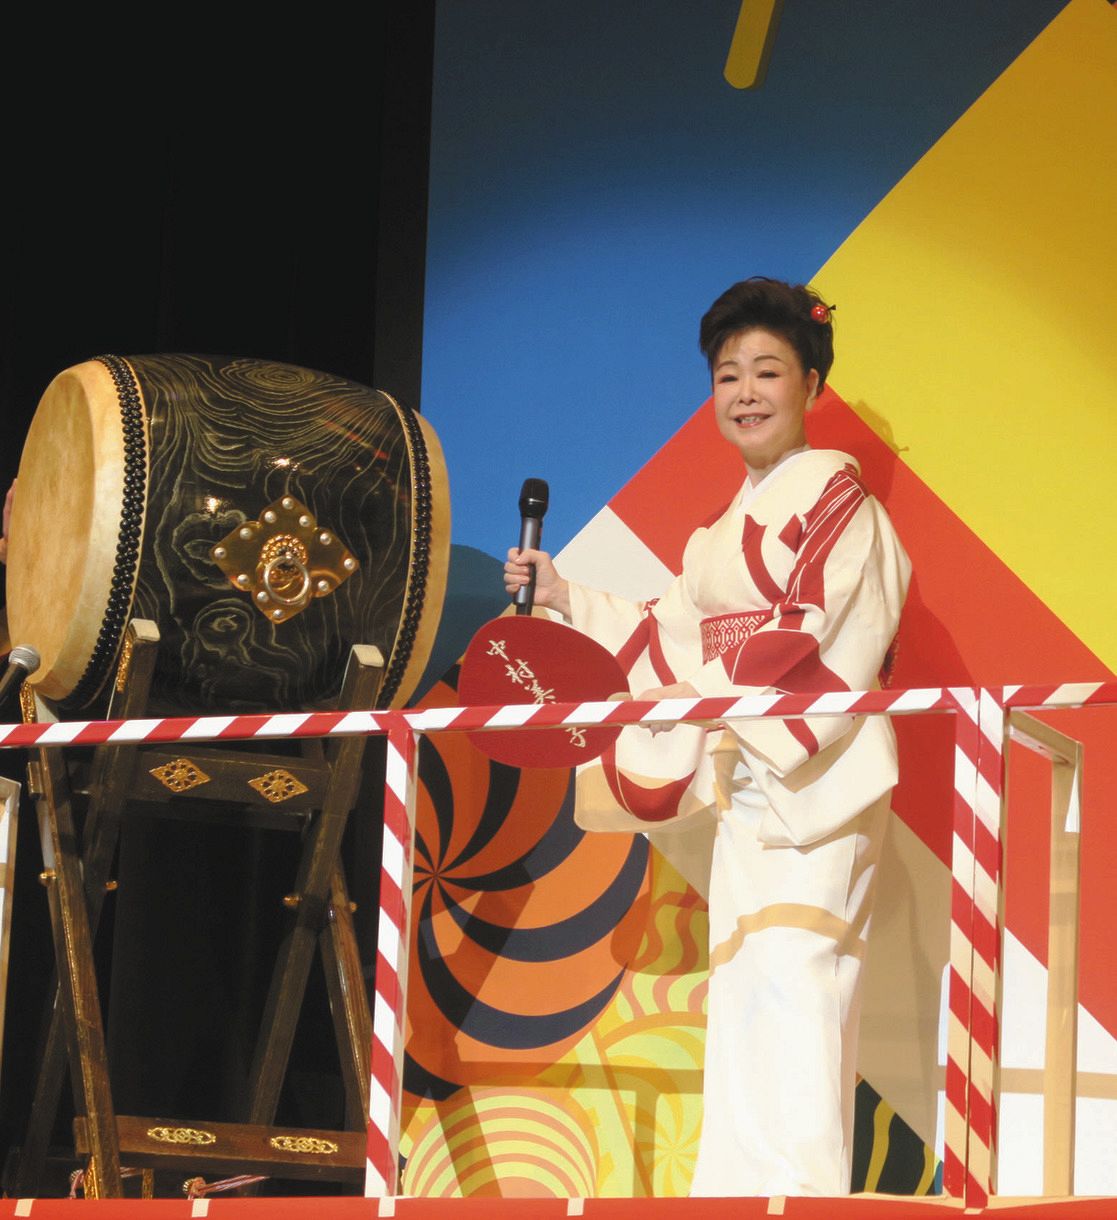 デビュー35周年記念コンサートを行った中村美律子